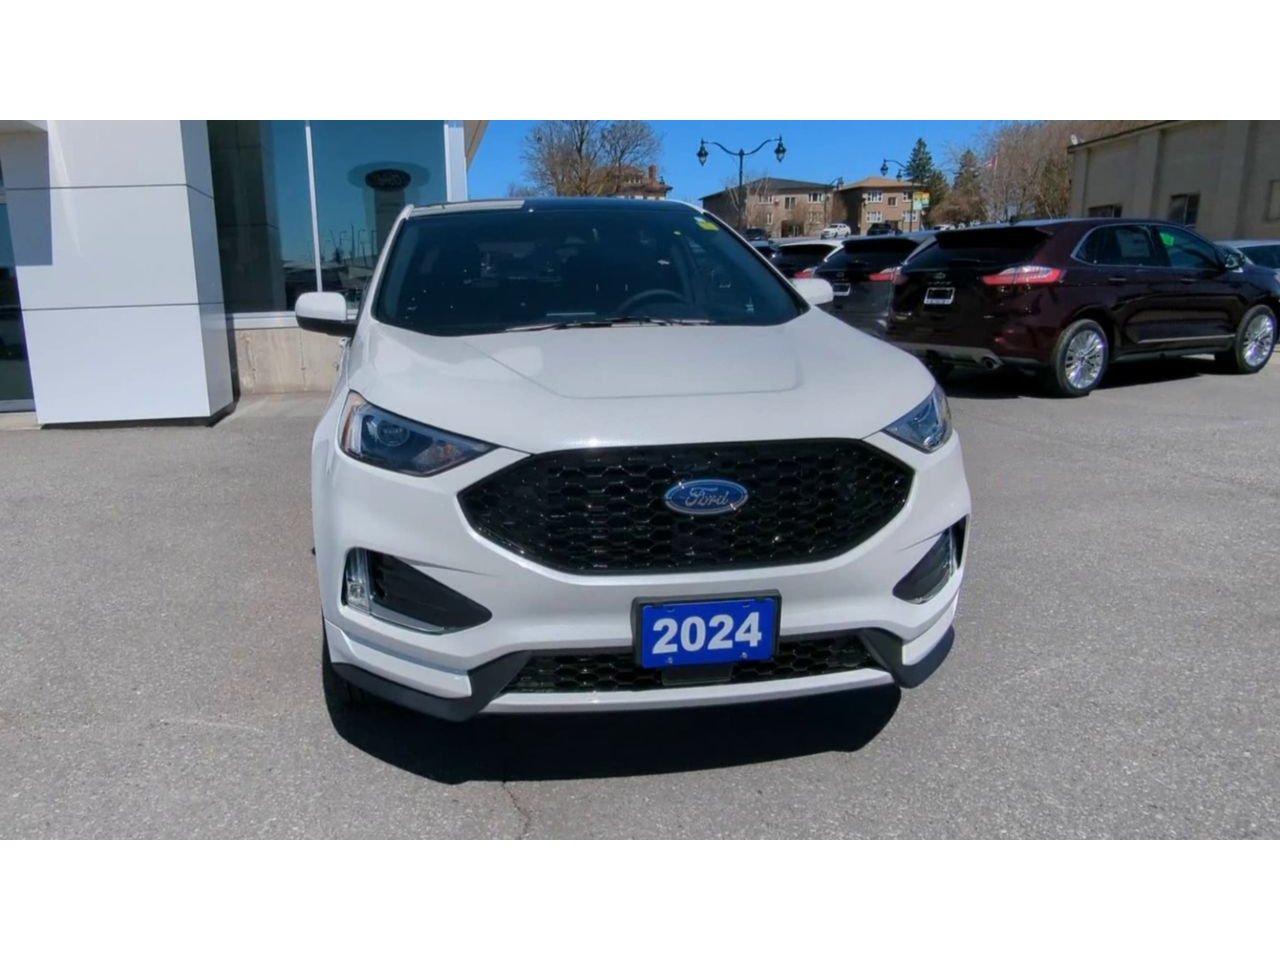 2024 Ford Edge - 21850 Full Image 3